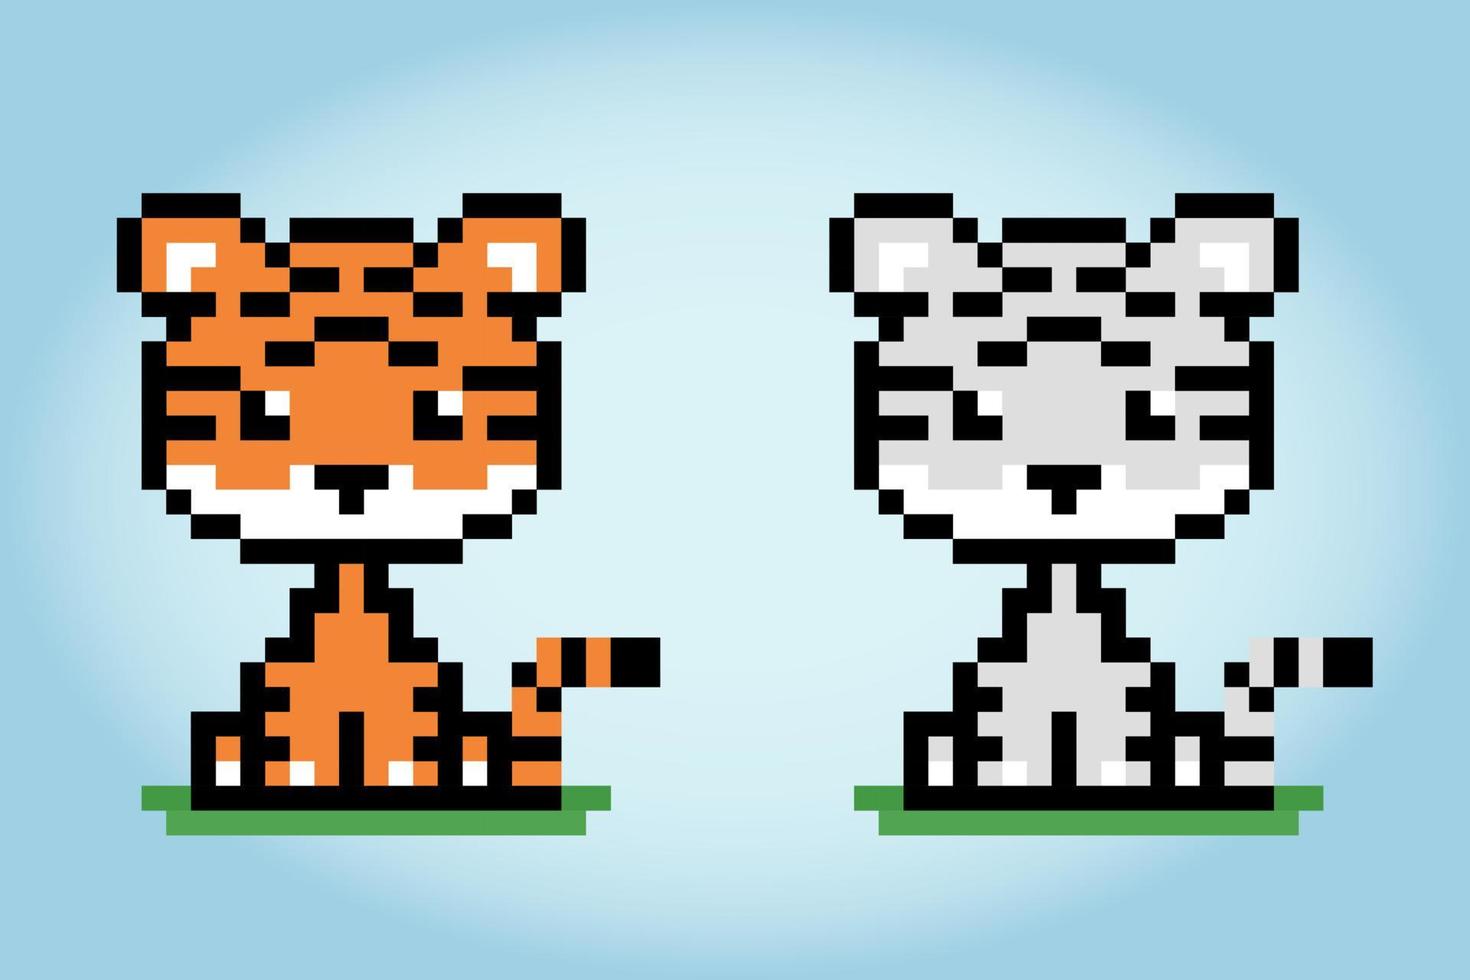 píxel de 8 bits un tigre. animales para activos de juego y patrones de punto de cruz en ilustraciones vectoriales. vector